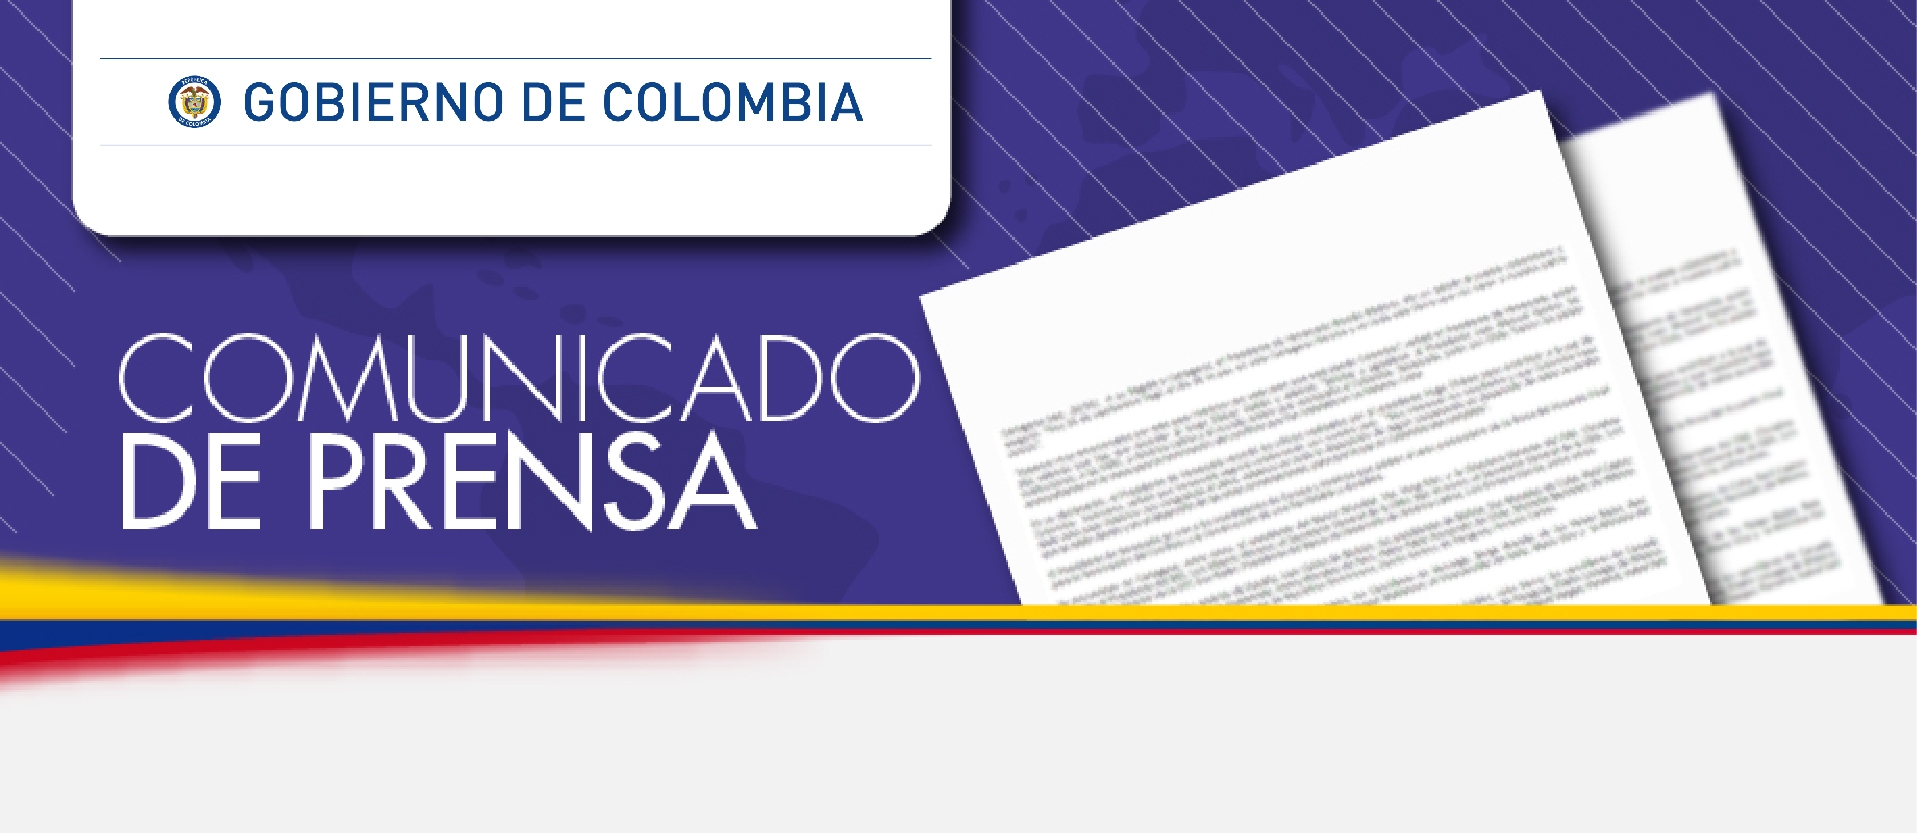 El Gobierno de Colombia reitera su preocupación por la situación que se presenta desde el pasado 18 de abril en la República de Nicaragua